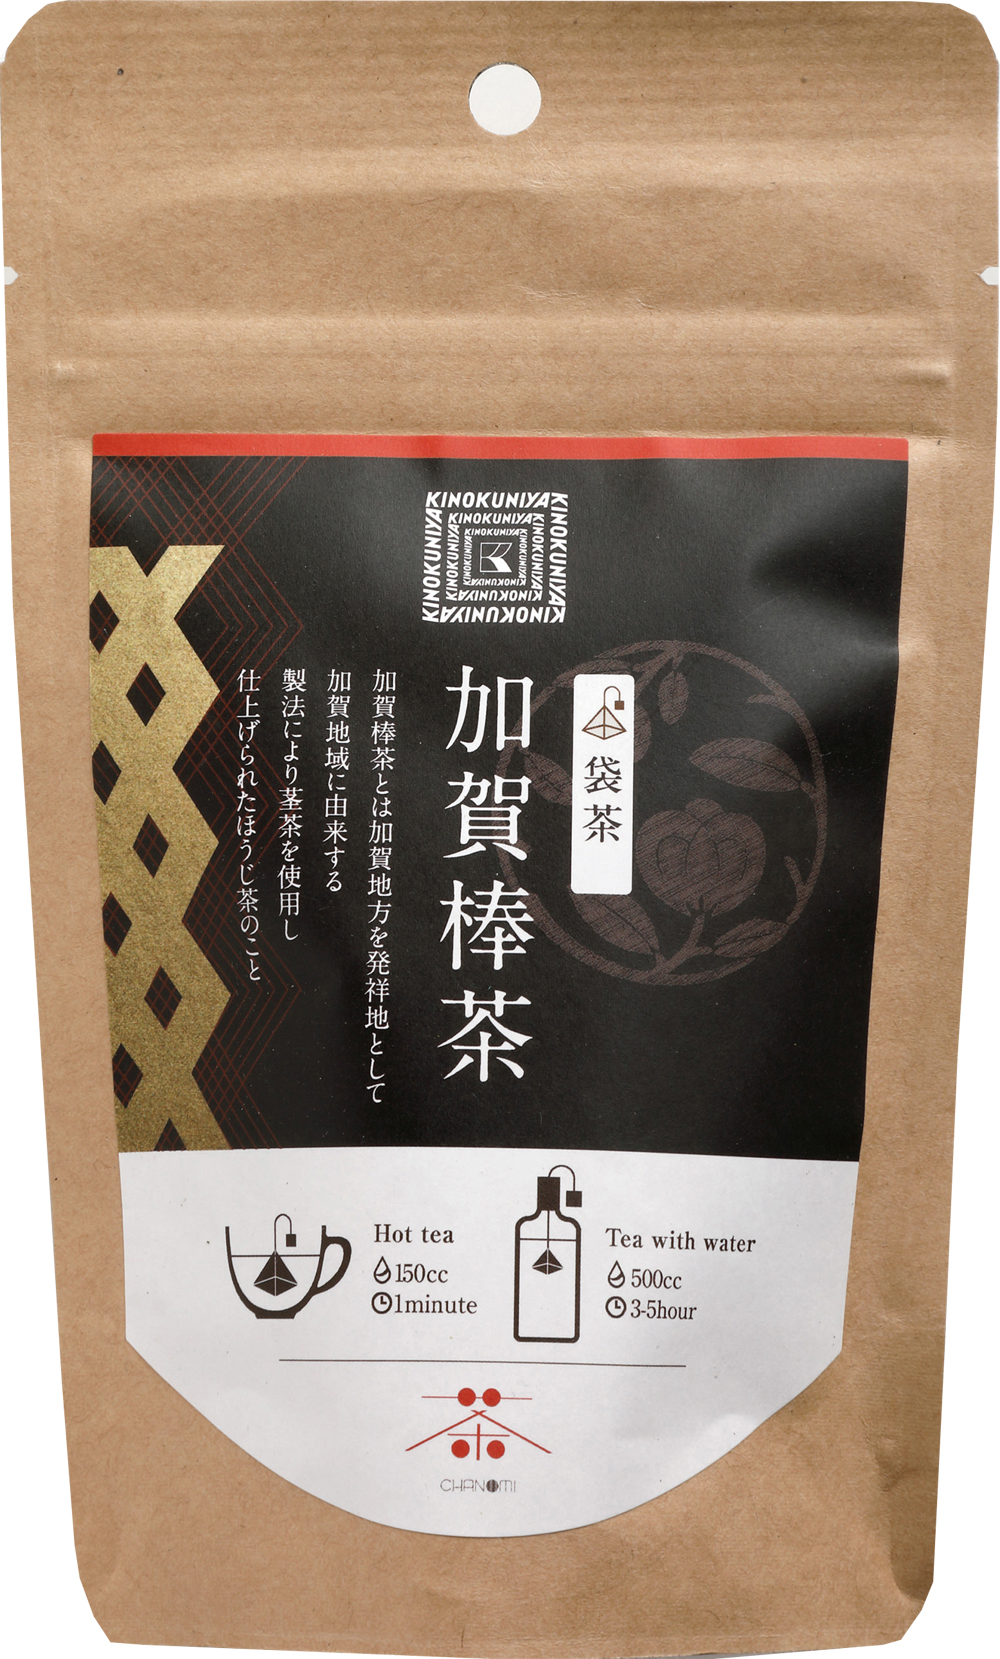 香ばしい上品な香りの金沢加賀棒茶を使用した自家製クッキー「加賀棒茶のスペシャルクッキー」が新登場のサブ画像3